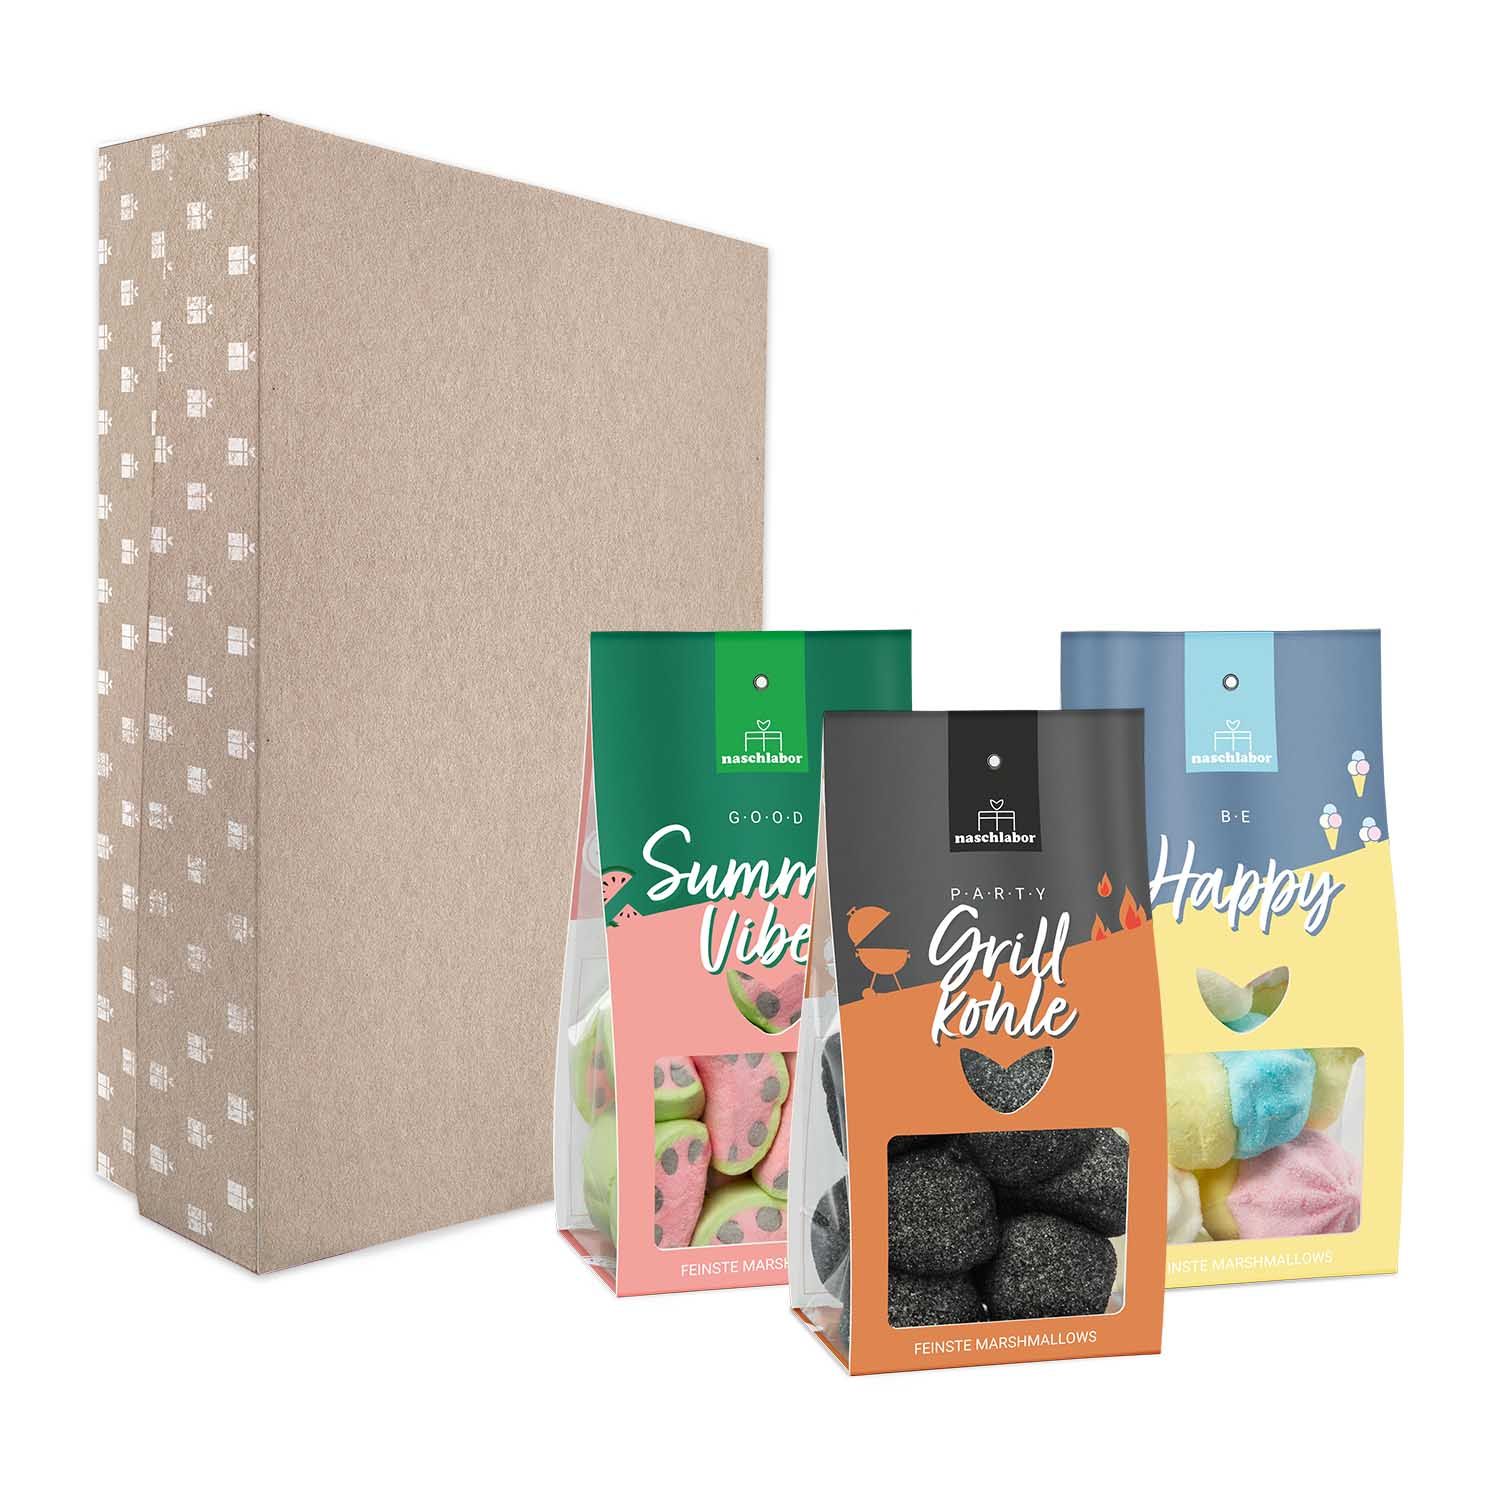 Grill & Chill Mix: Dein Marshmallow Party Mix für den Sommer in Geschenkbox